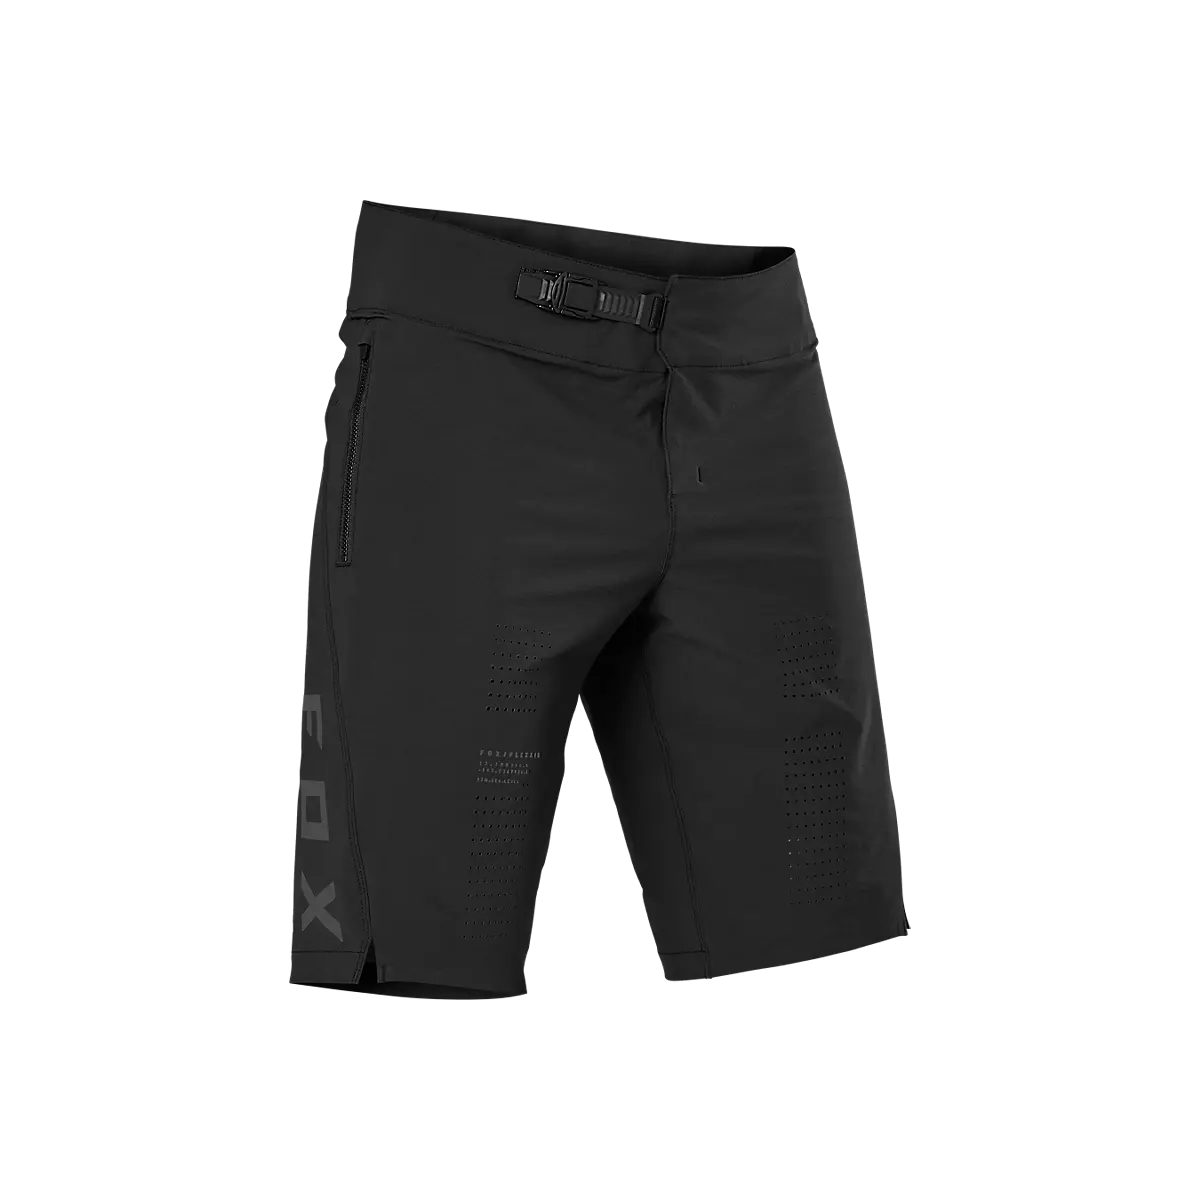 Pantalones Fox de Sam Hill en color negro | Fox MTB